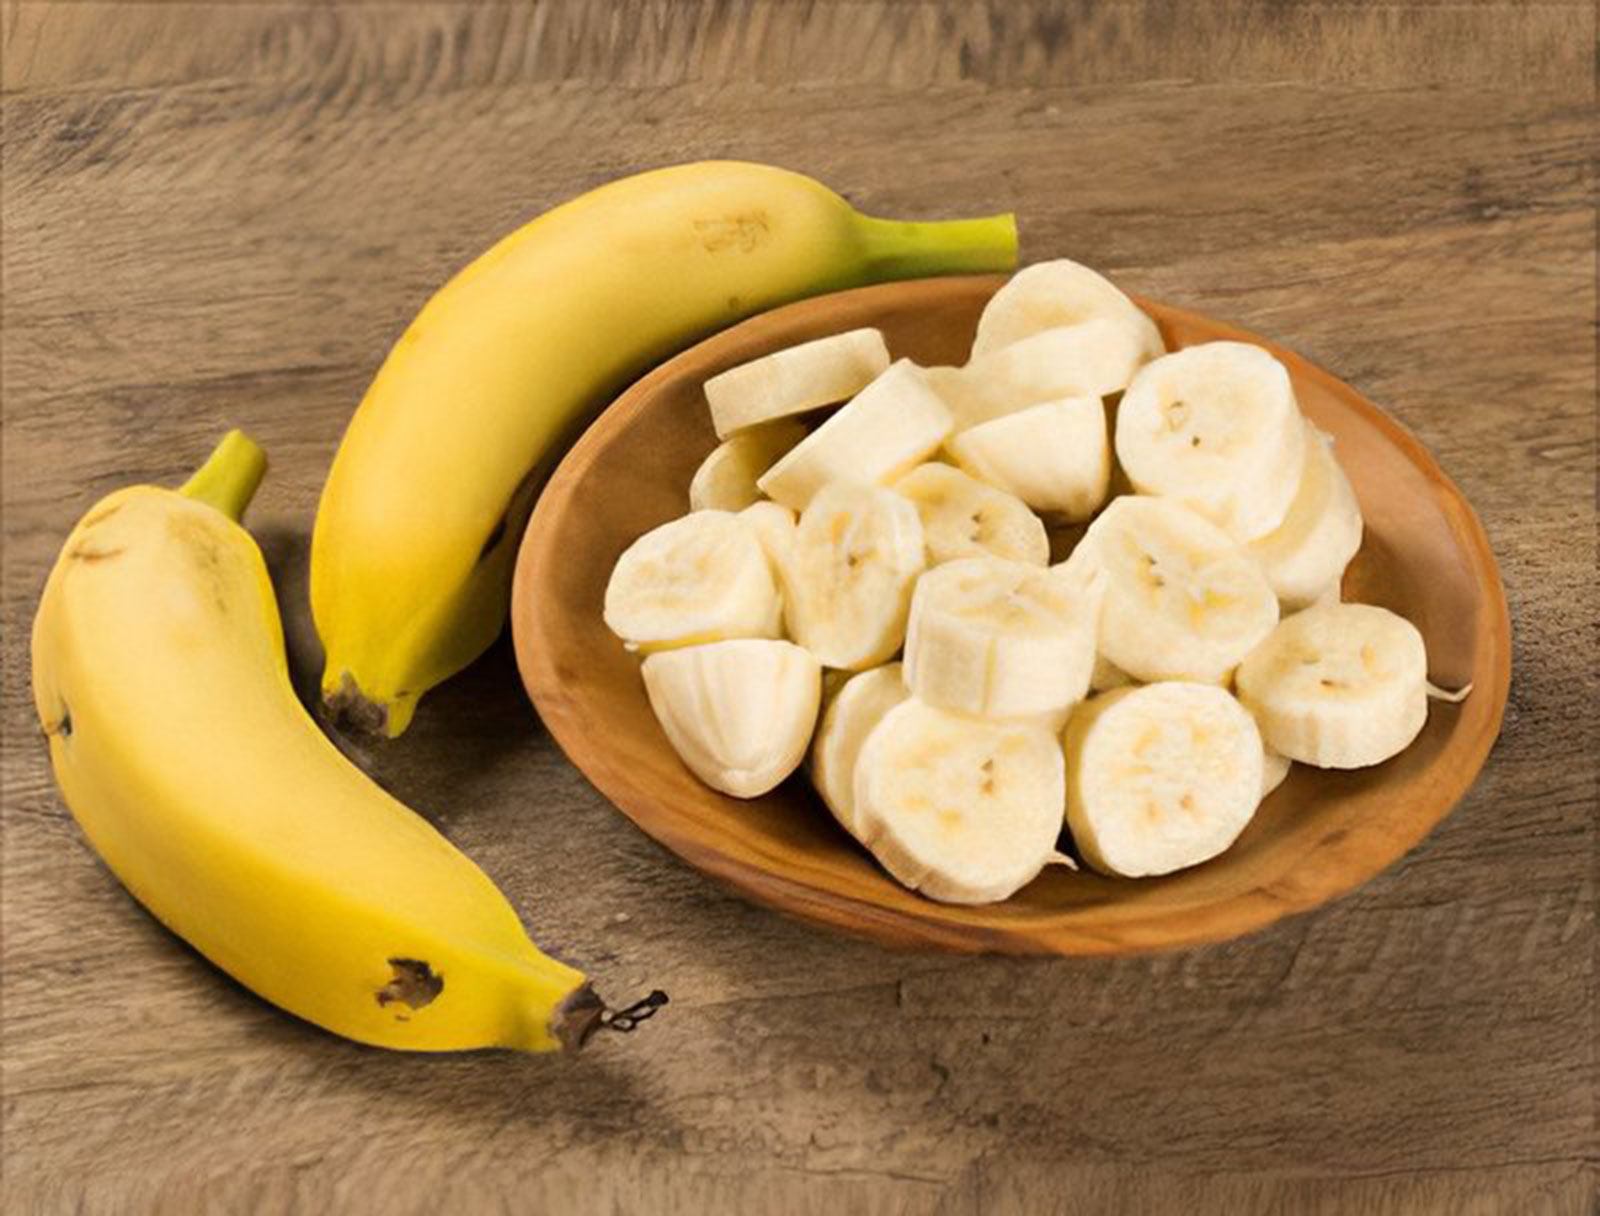 فائدة تناول الموز يوميًا